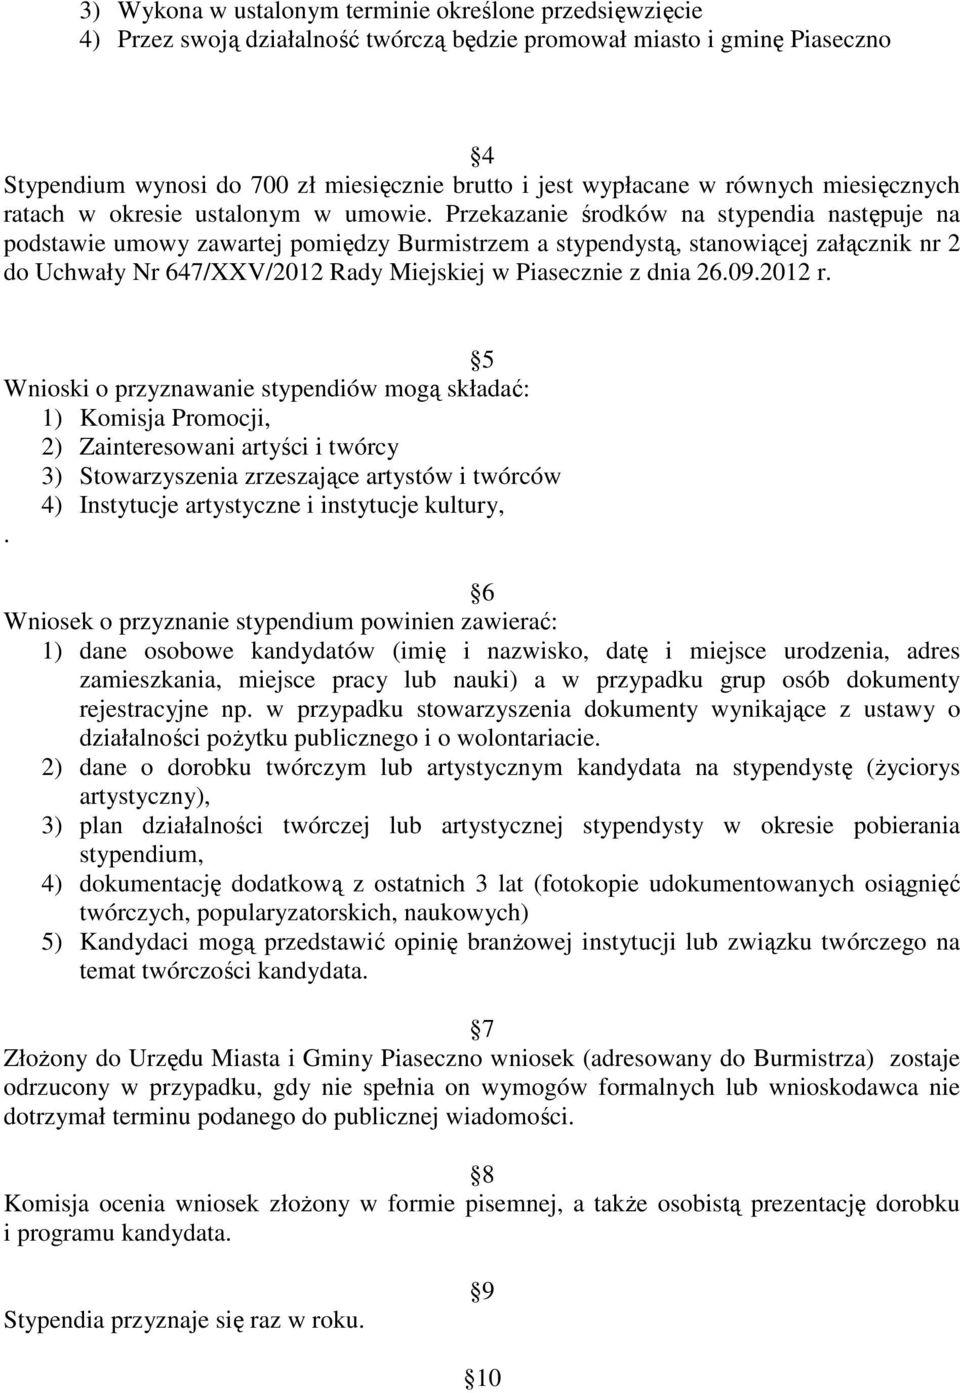 Przekazanie środków na stypendia następuje na podstawie umowy zawartej pomiędzy Burmistrzem a stypendystą, stanowiącej załącznik nr 2 do Uchwały Nr 647/XXV/2012 Rady Miejskiej w Piasecznie z dnia 26.